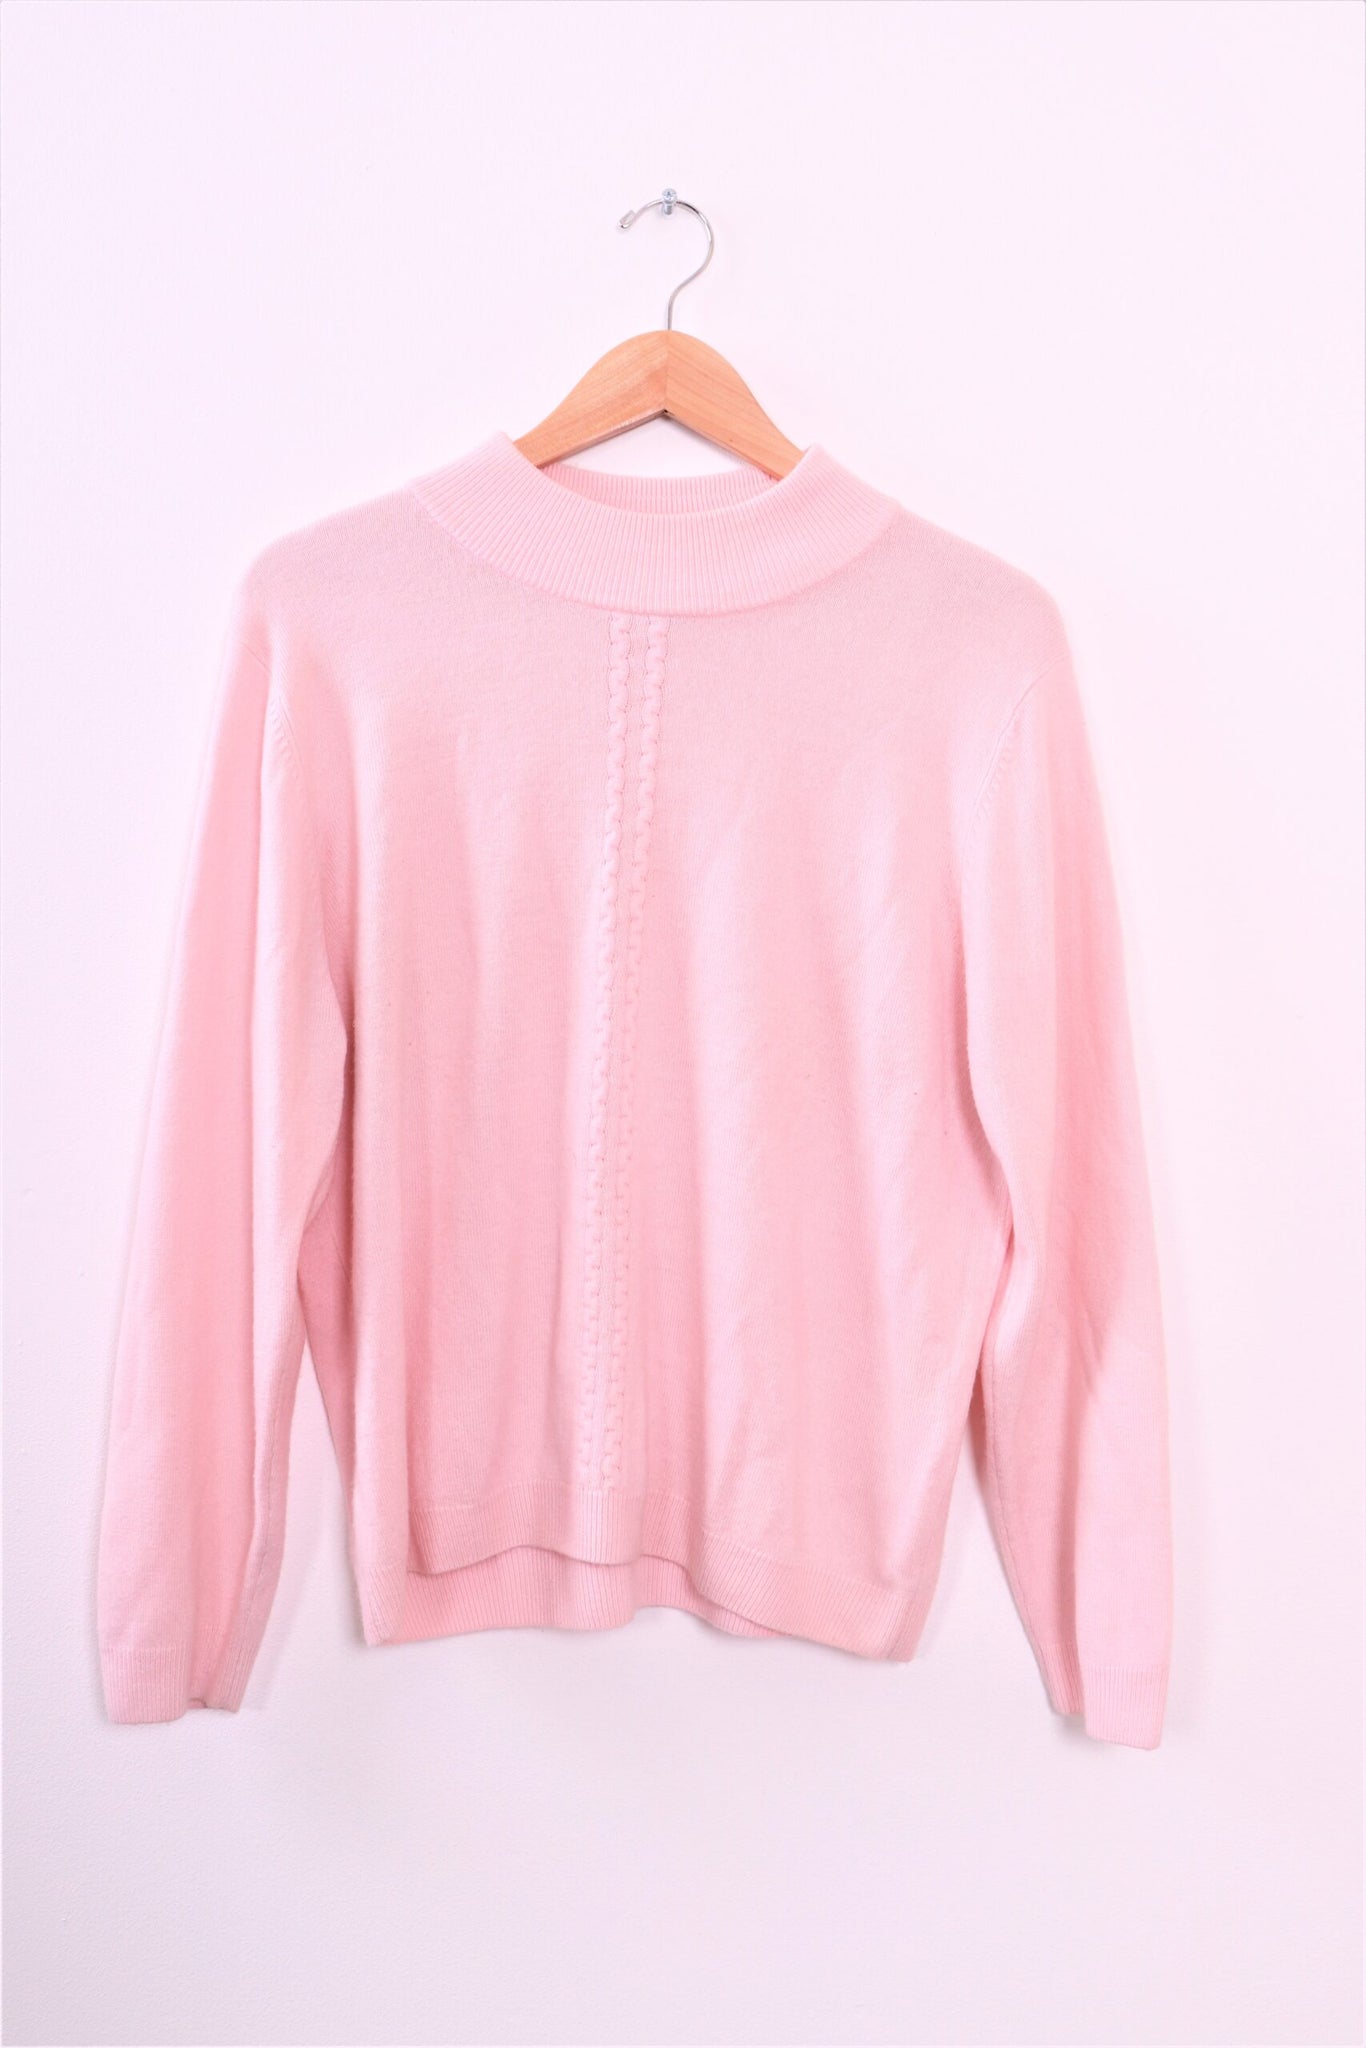 Vintage Allison Daley Pink Sweater